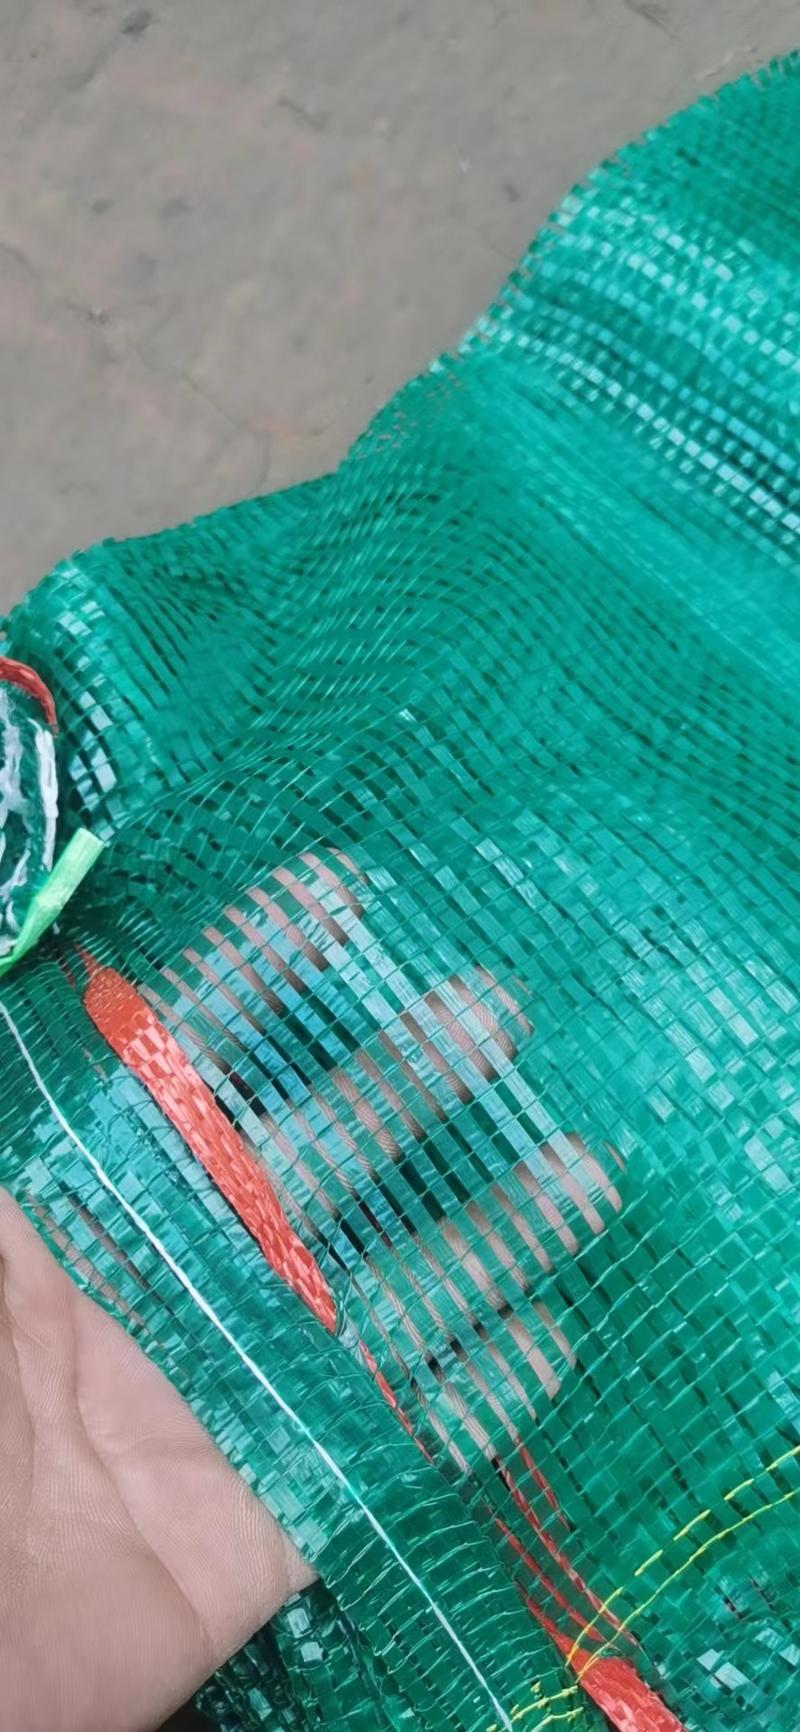 「精」蔬菜网袋洋葱网袋各种型号网袋大量供应中